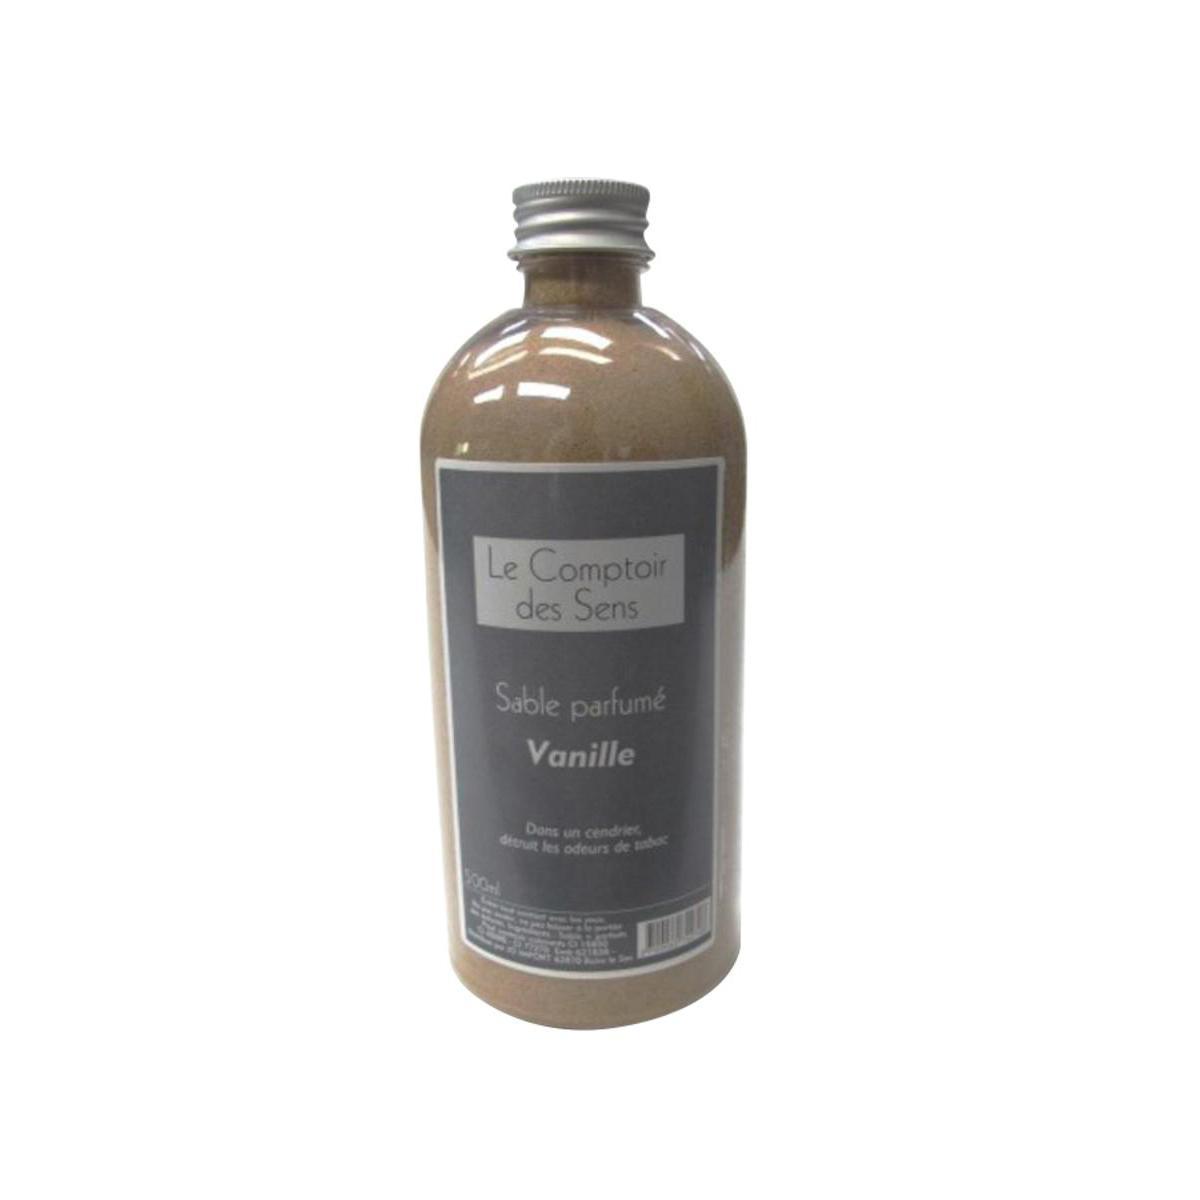 Sable parfumé vanille - 500 ml - Marron